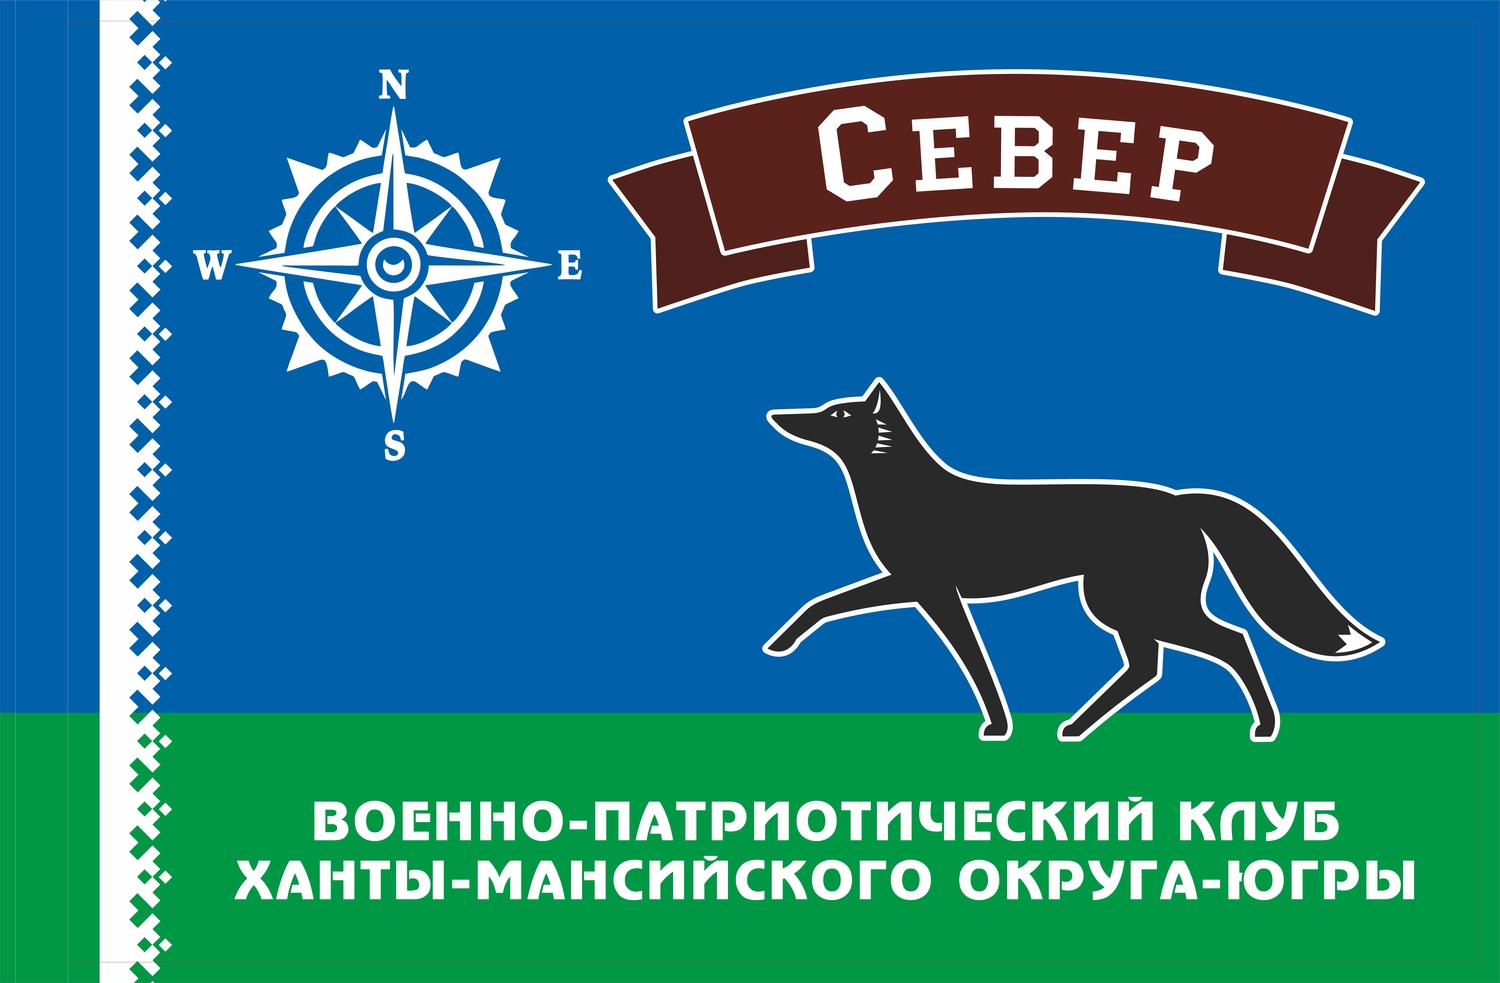 Городской военно-патриотический клуб "Север" (создан в 2017 г.)